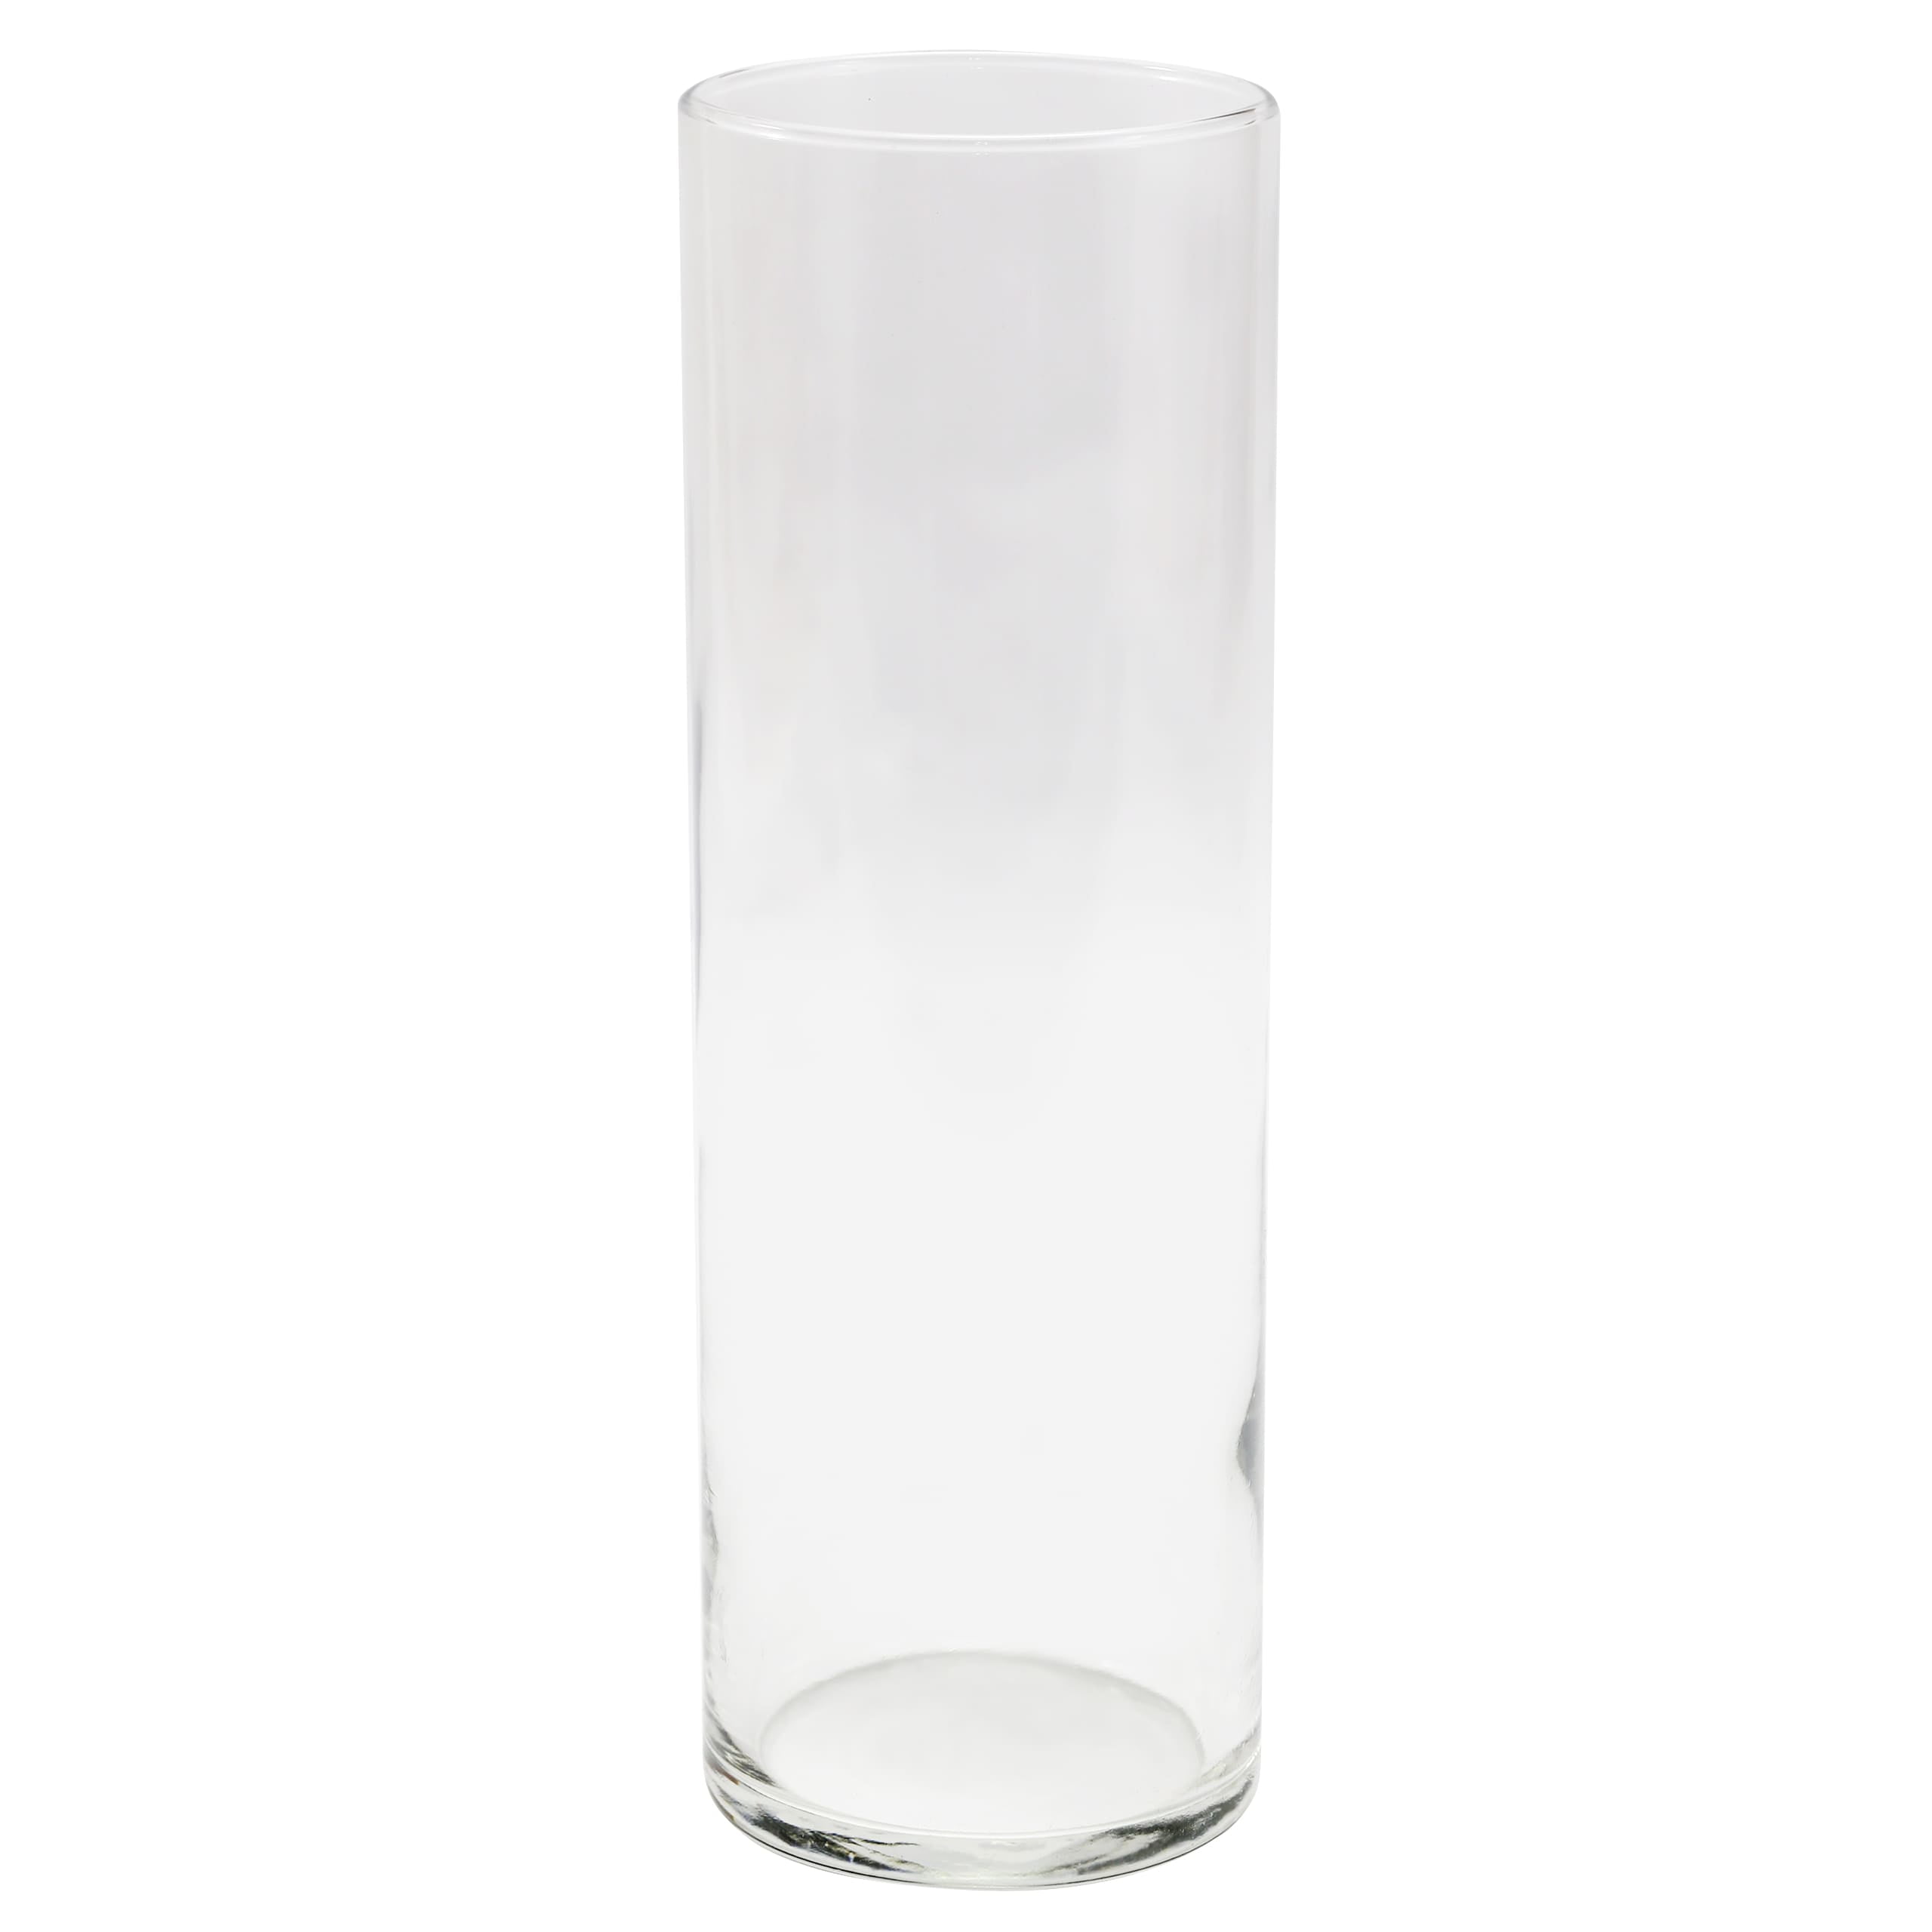 Libbey Glasswares Glass 9.5